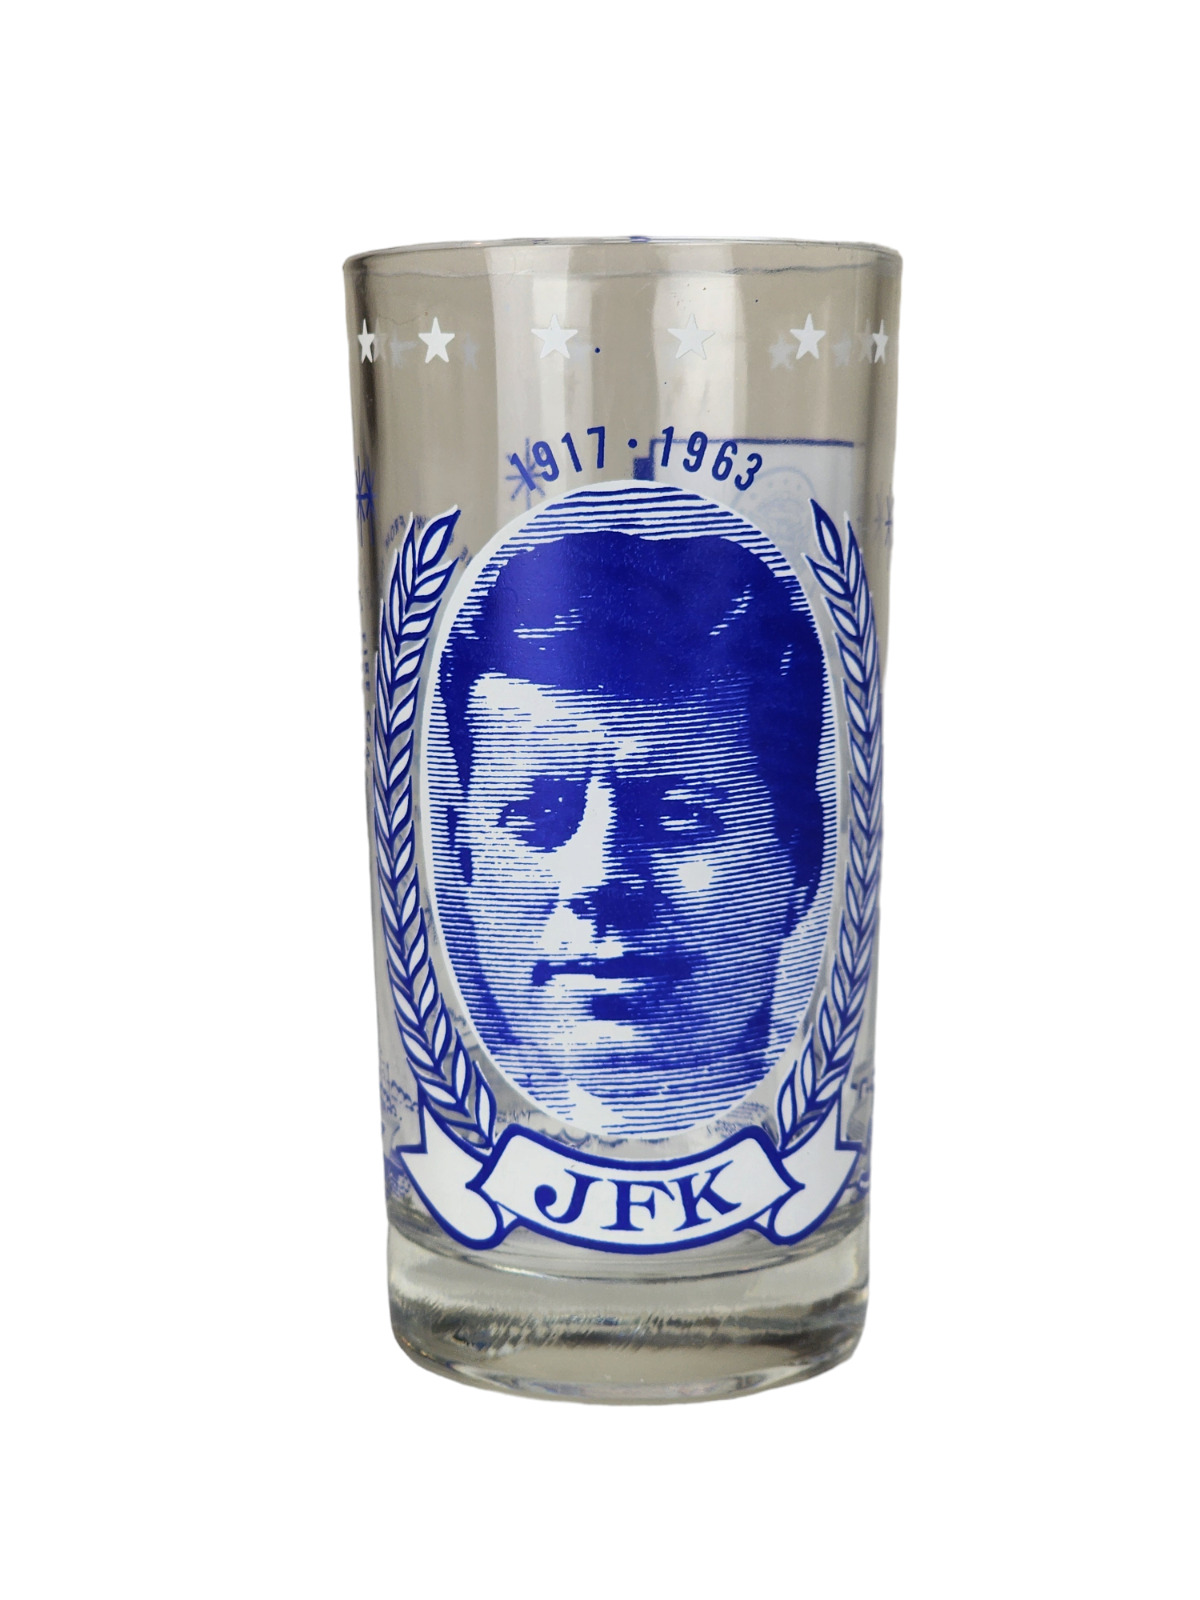 Vintage JFK Memorial glass/tumbler 1917-1963  President John F Kennedy